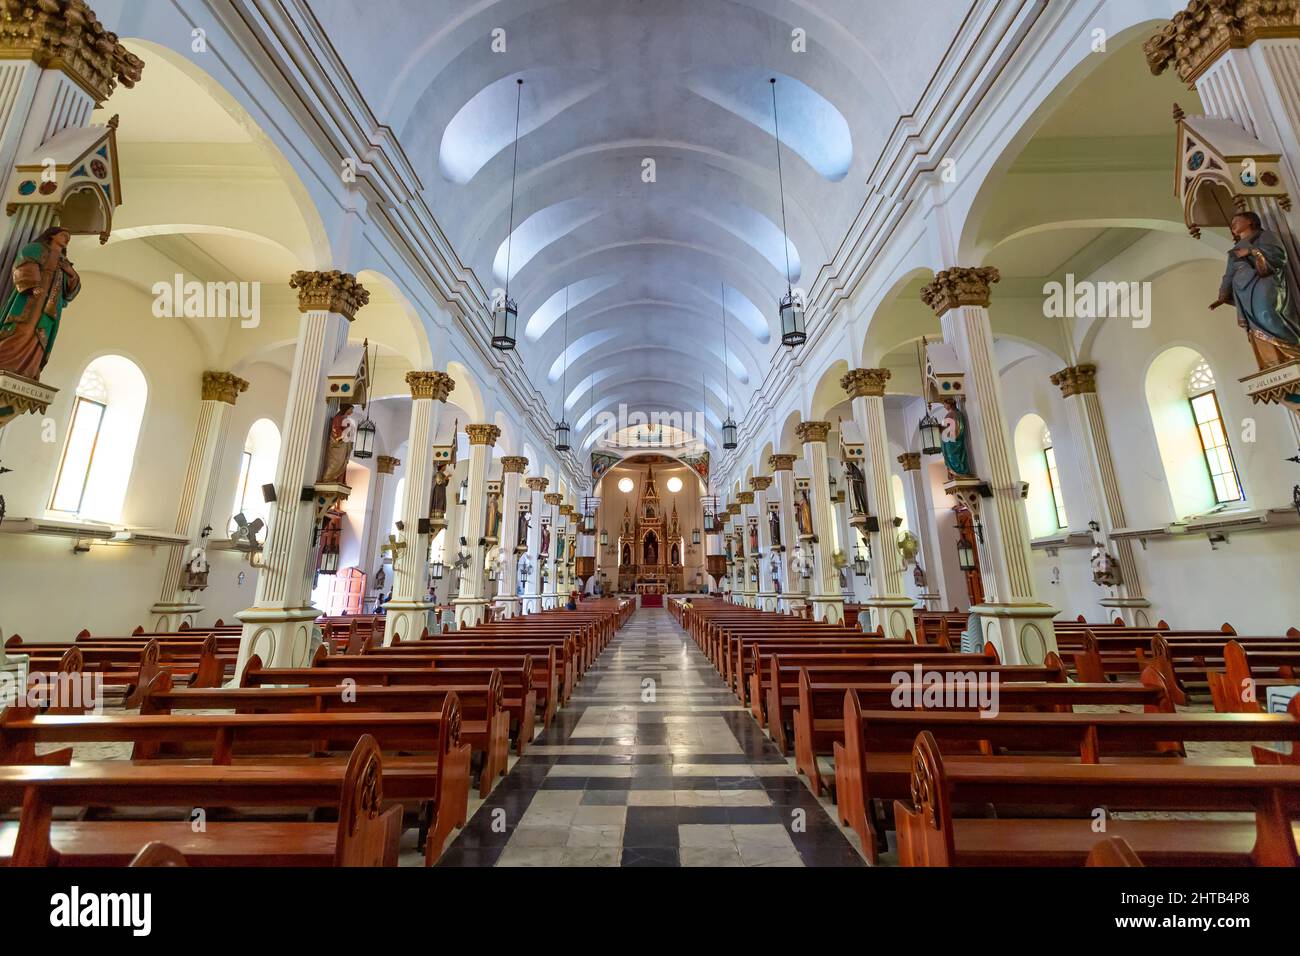 Une belle vue de l'intérieur de l'église Molo dans la ville d'Iloilo, Philippines Banque D'Images